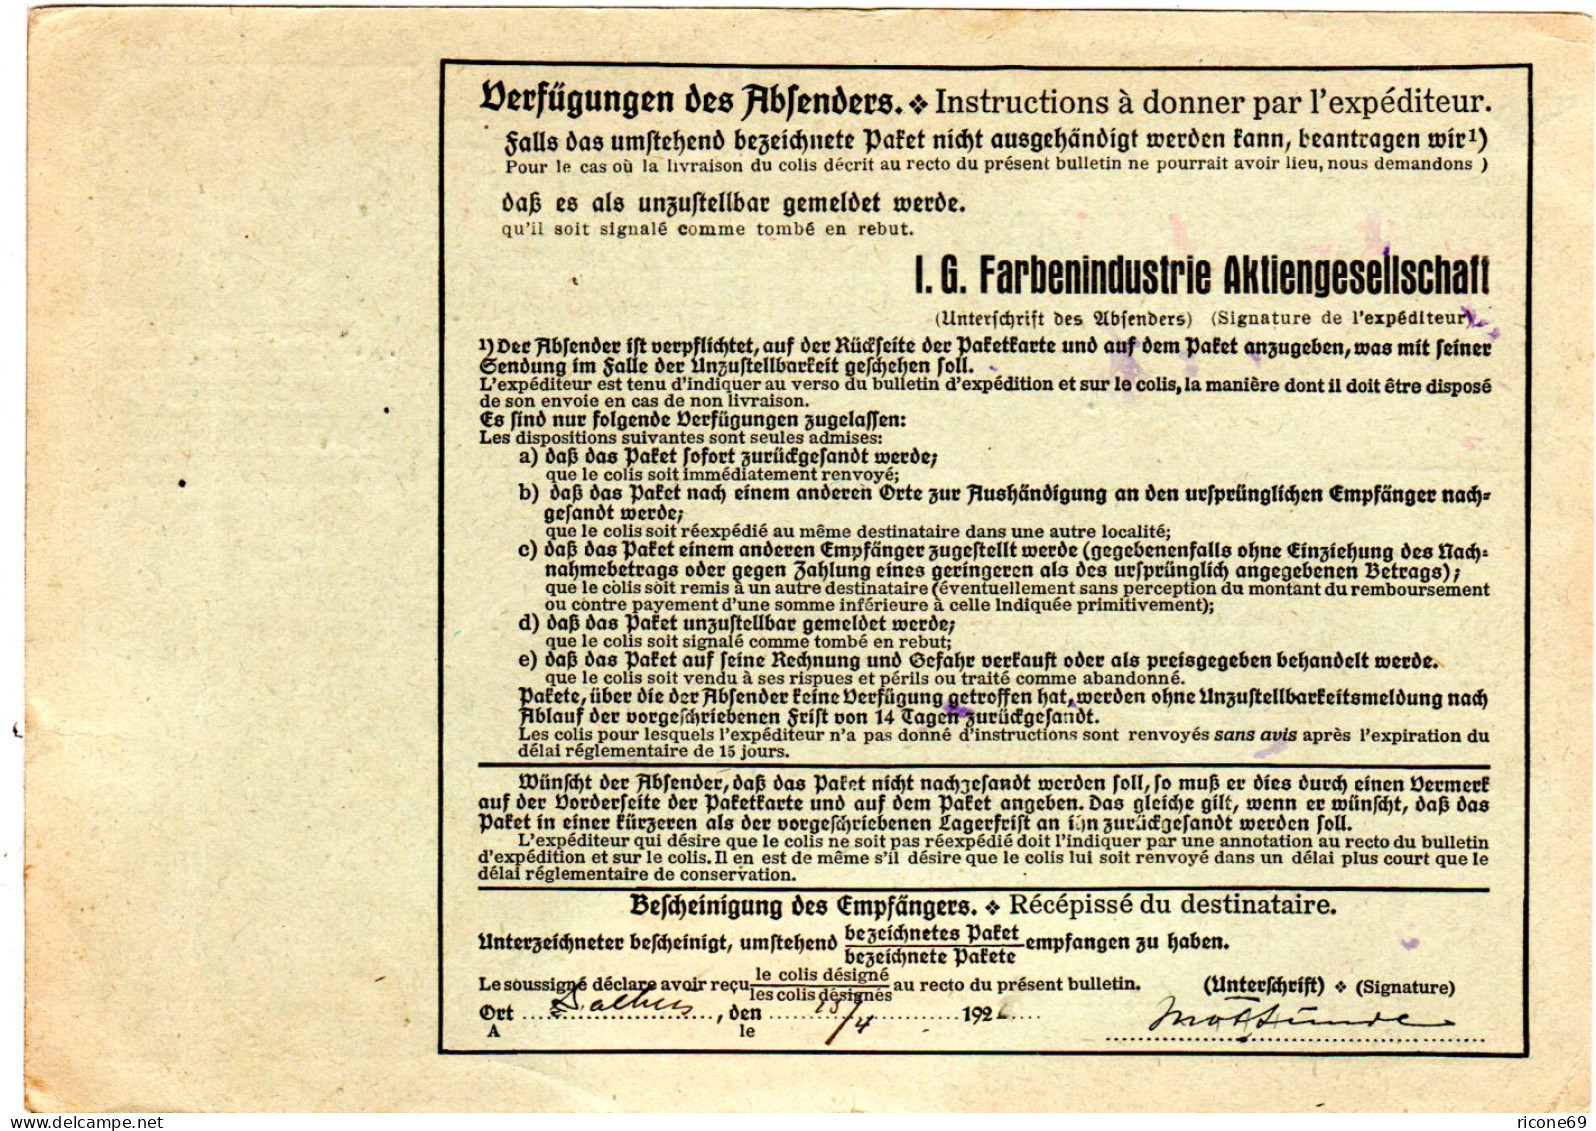 DR 1926, 60+2x100 Pf. Auf Paketkarte V. Fechenheim Via Hamburg N. Norwegen  - Covers & Documents